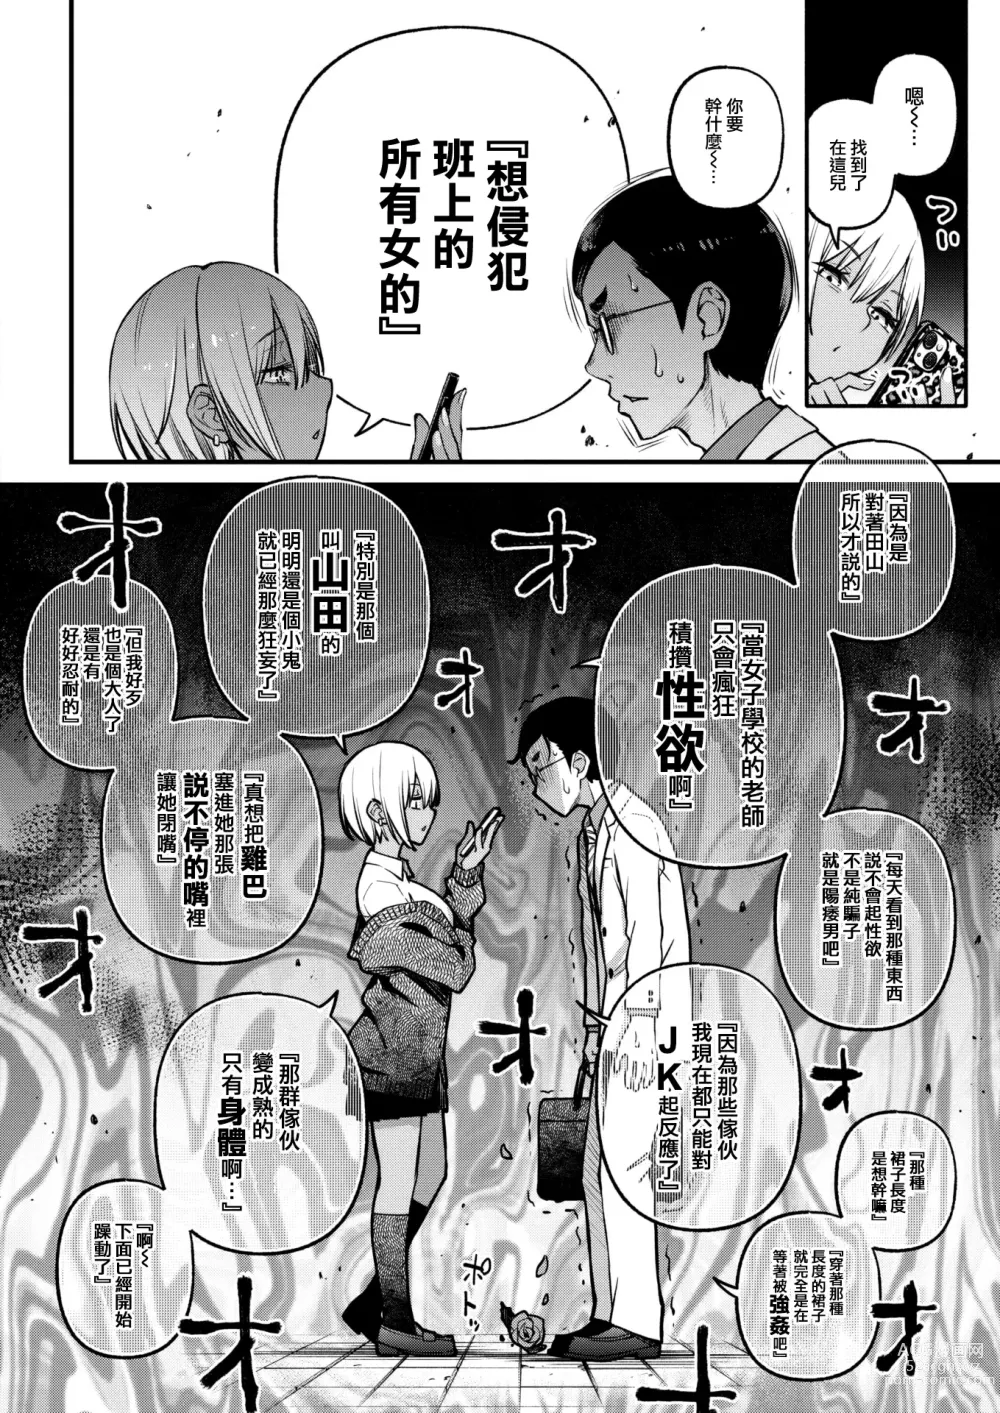 Page 9 of manga Sensei Matching